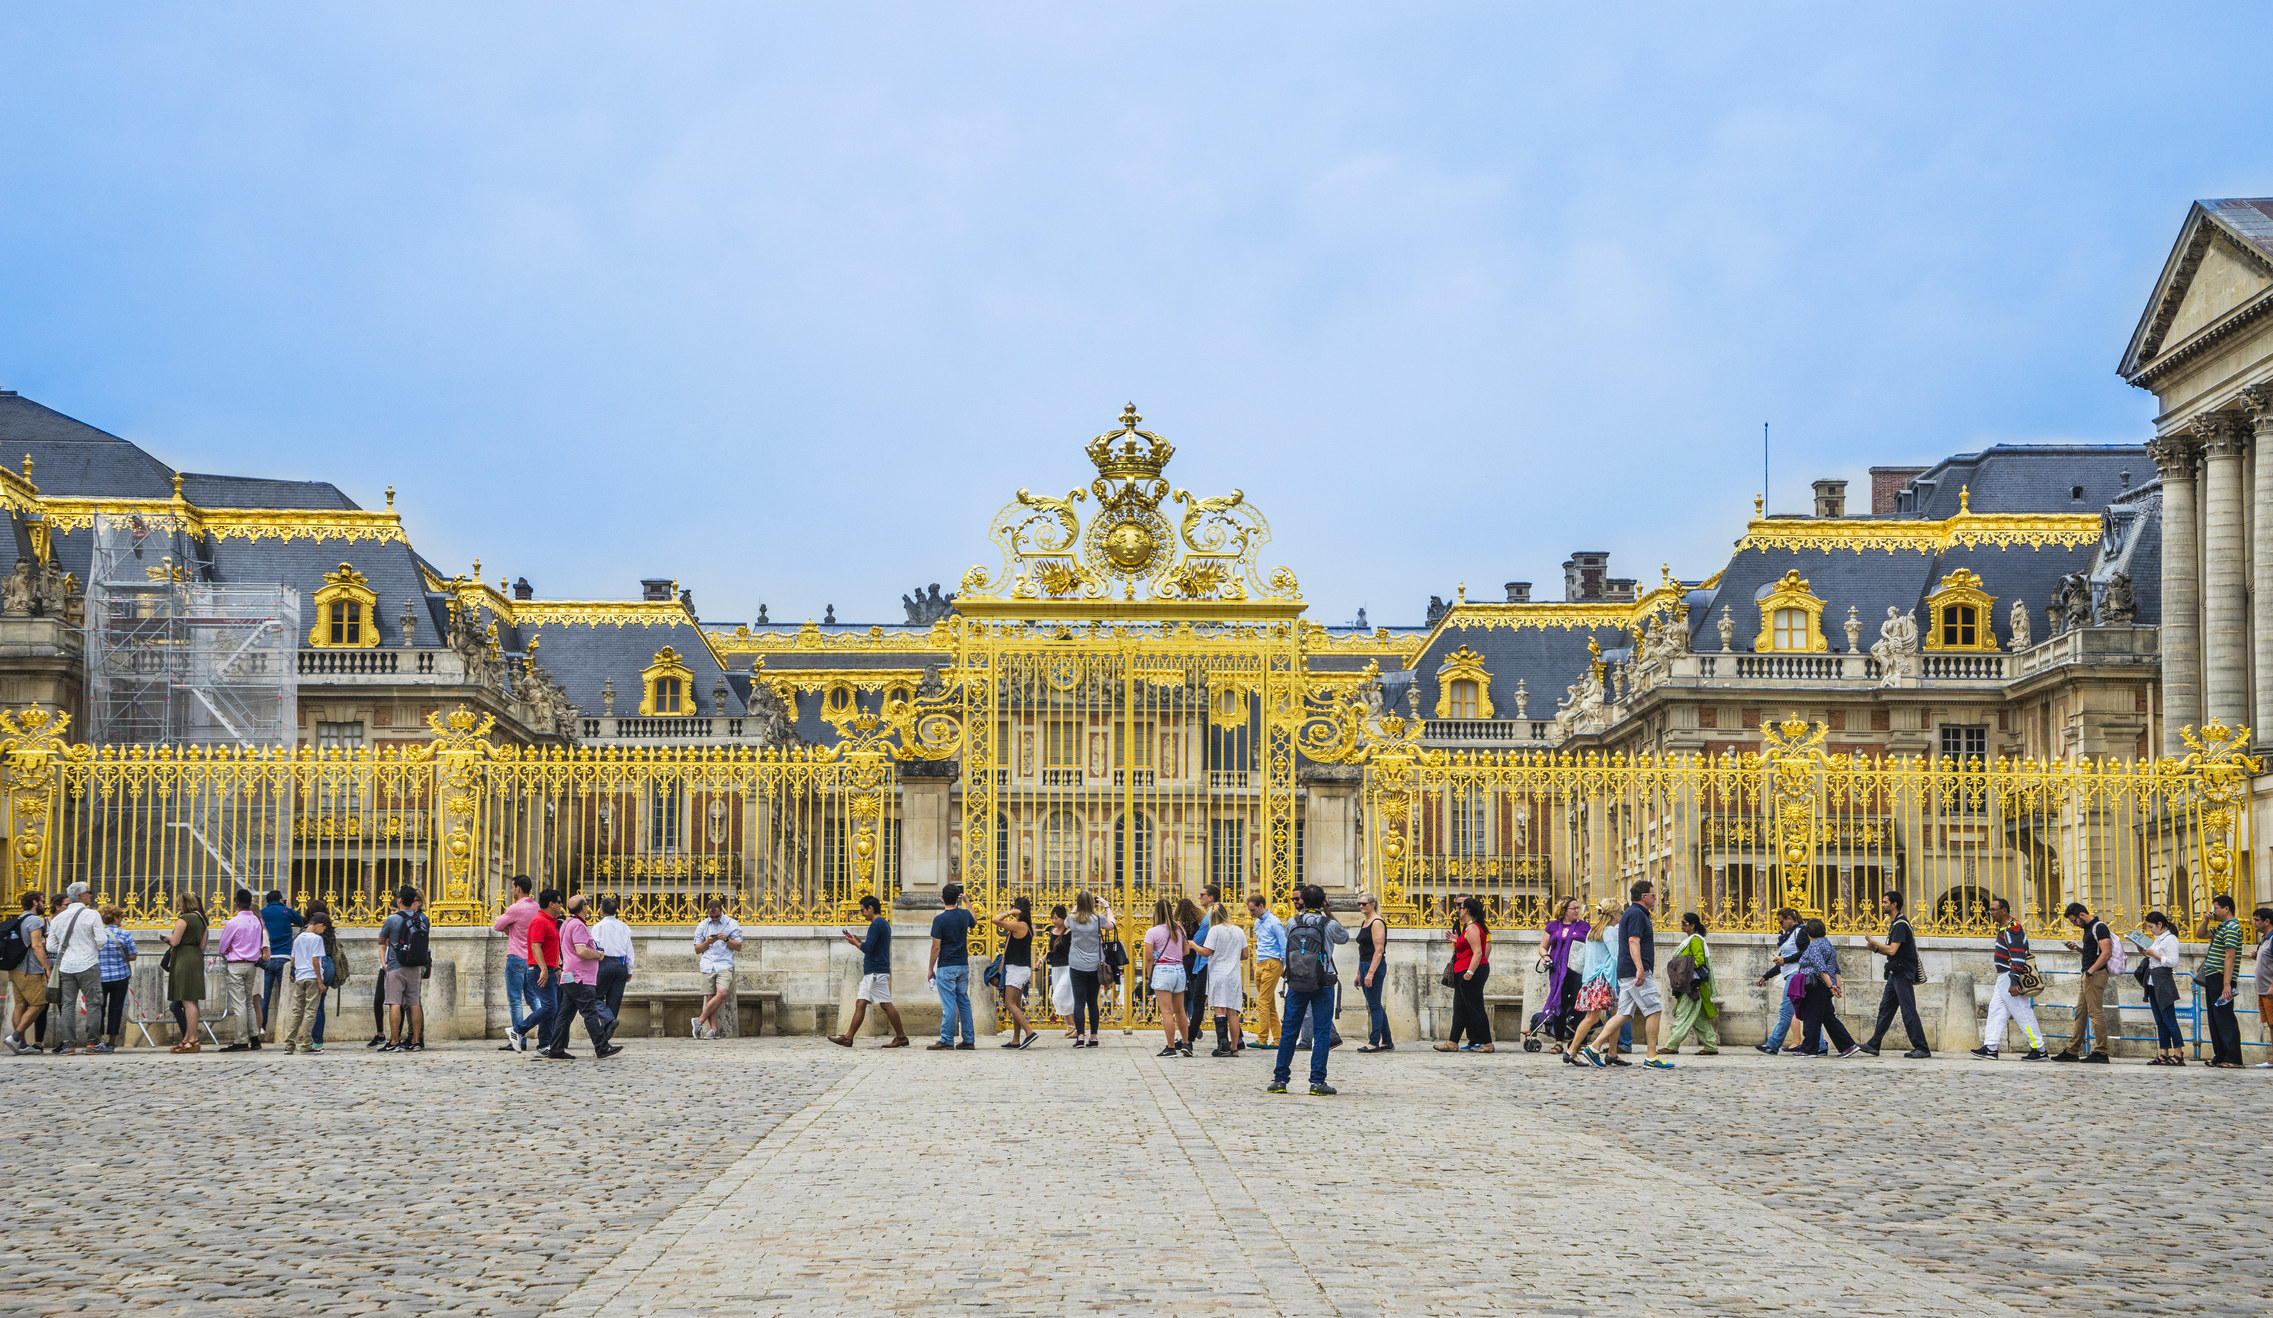 游客排队等候在凡尔赛宫。